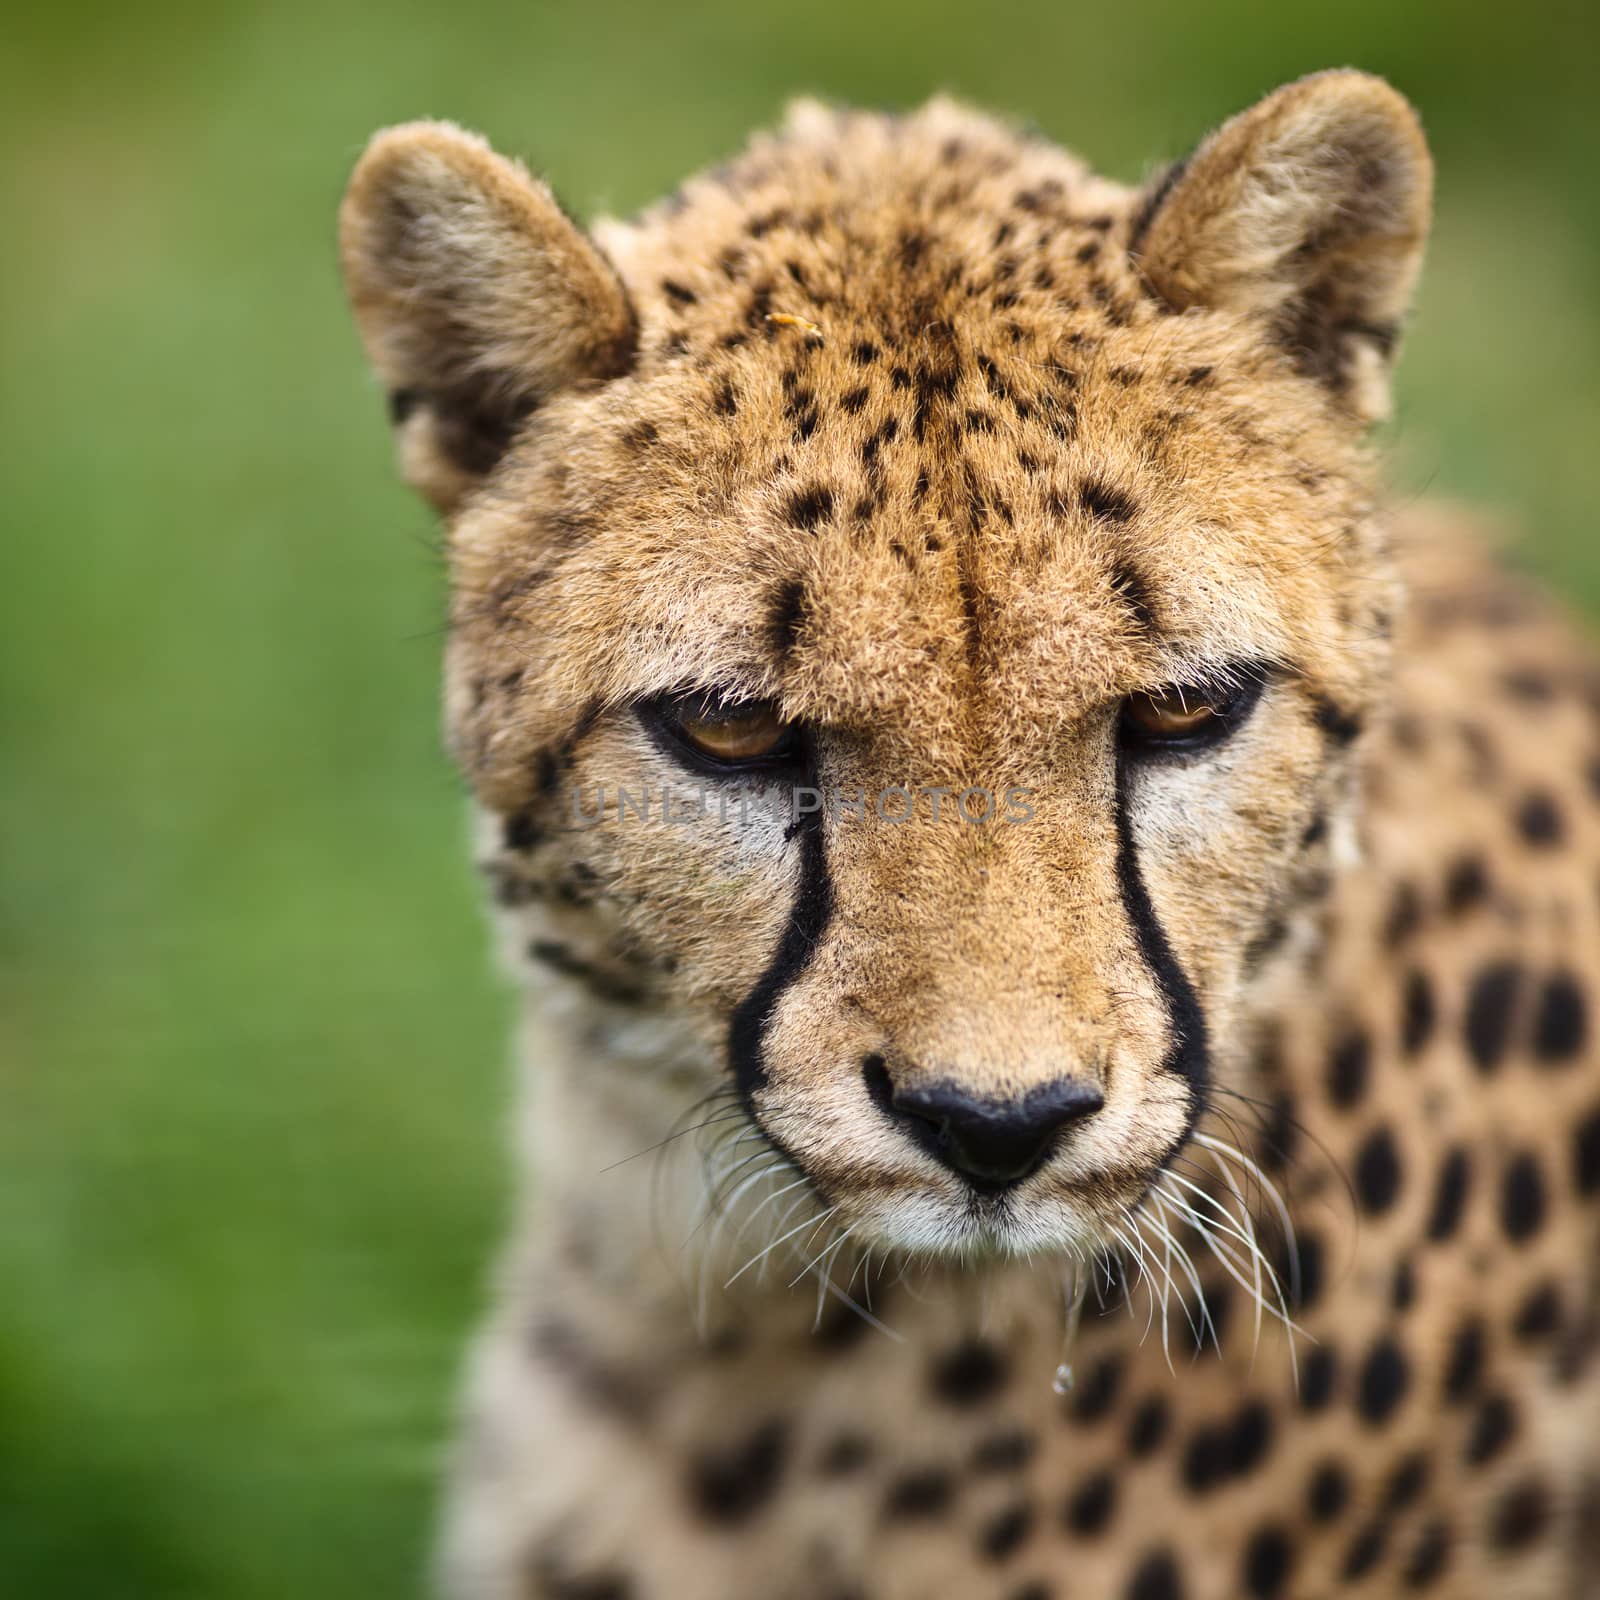 Cheetah (Acinonyx jubatus) by viktor_cap